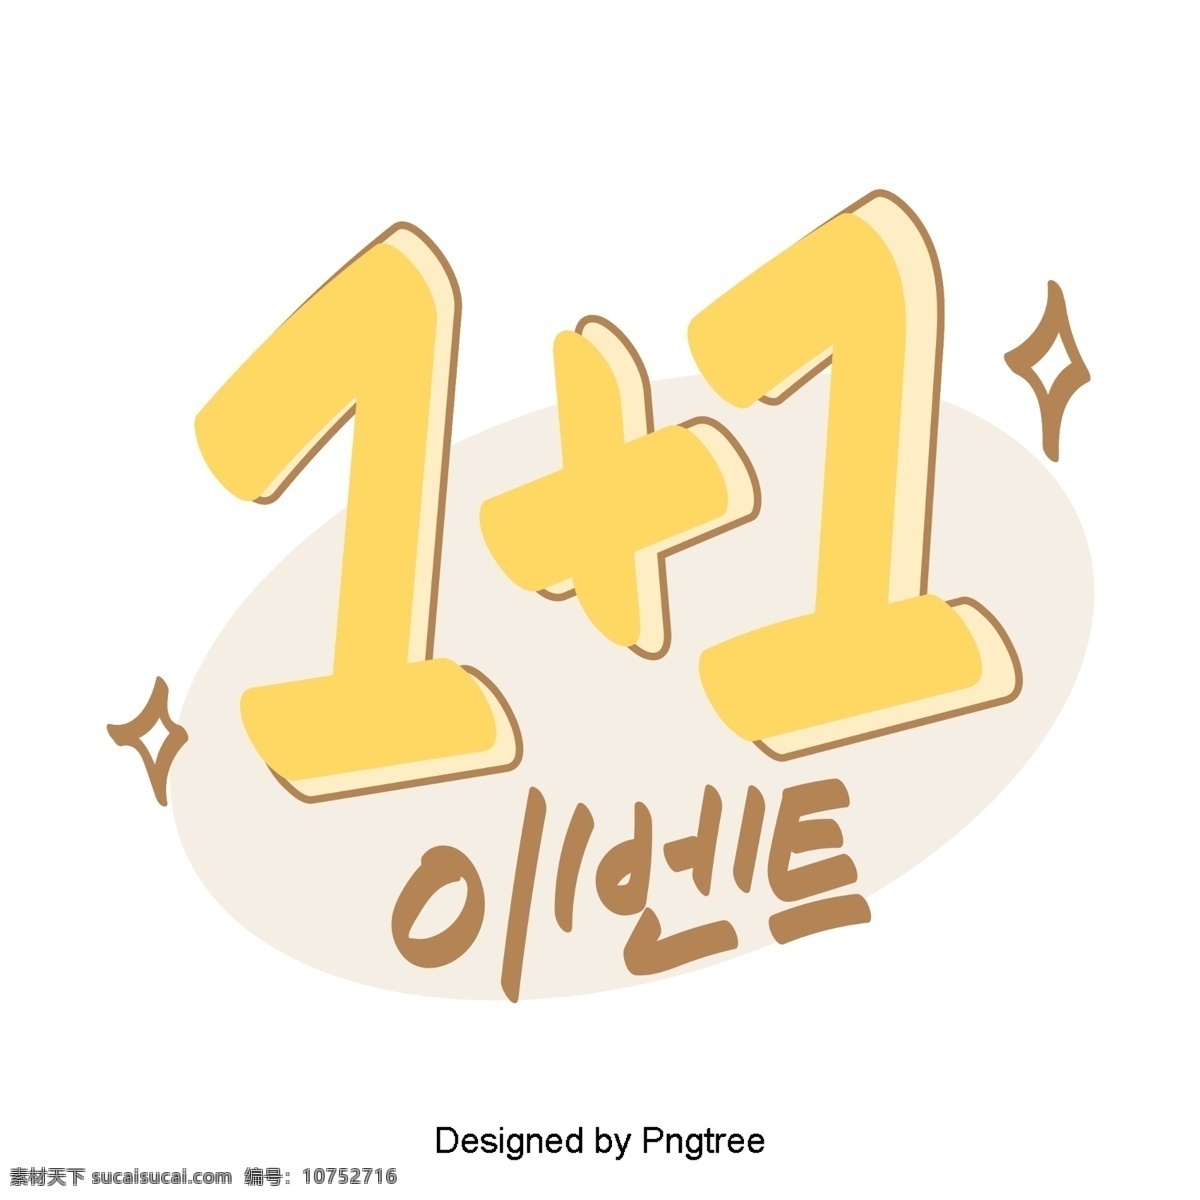 事件 朝鲜 风格 元素 每天 手 种 字体 黄数字 可爱 卡通 移动支付 1项目